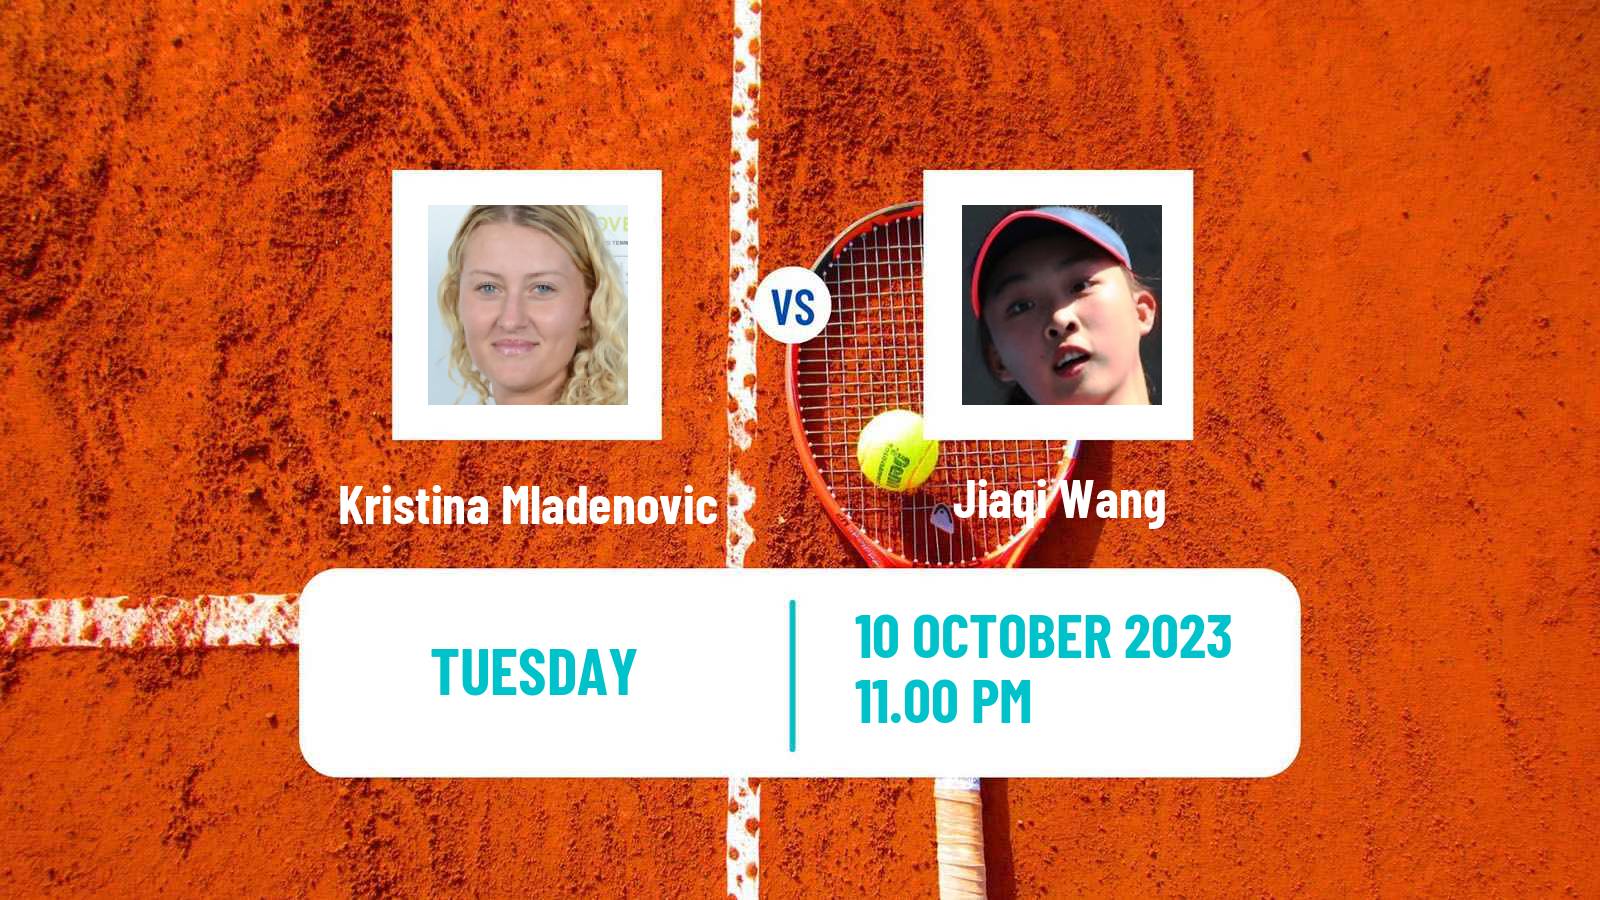 Tennis ITF W40 Shenzhen Women Kristina Mladenovic - Jiaqi Wang